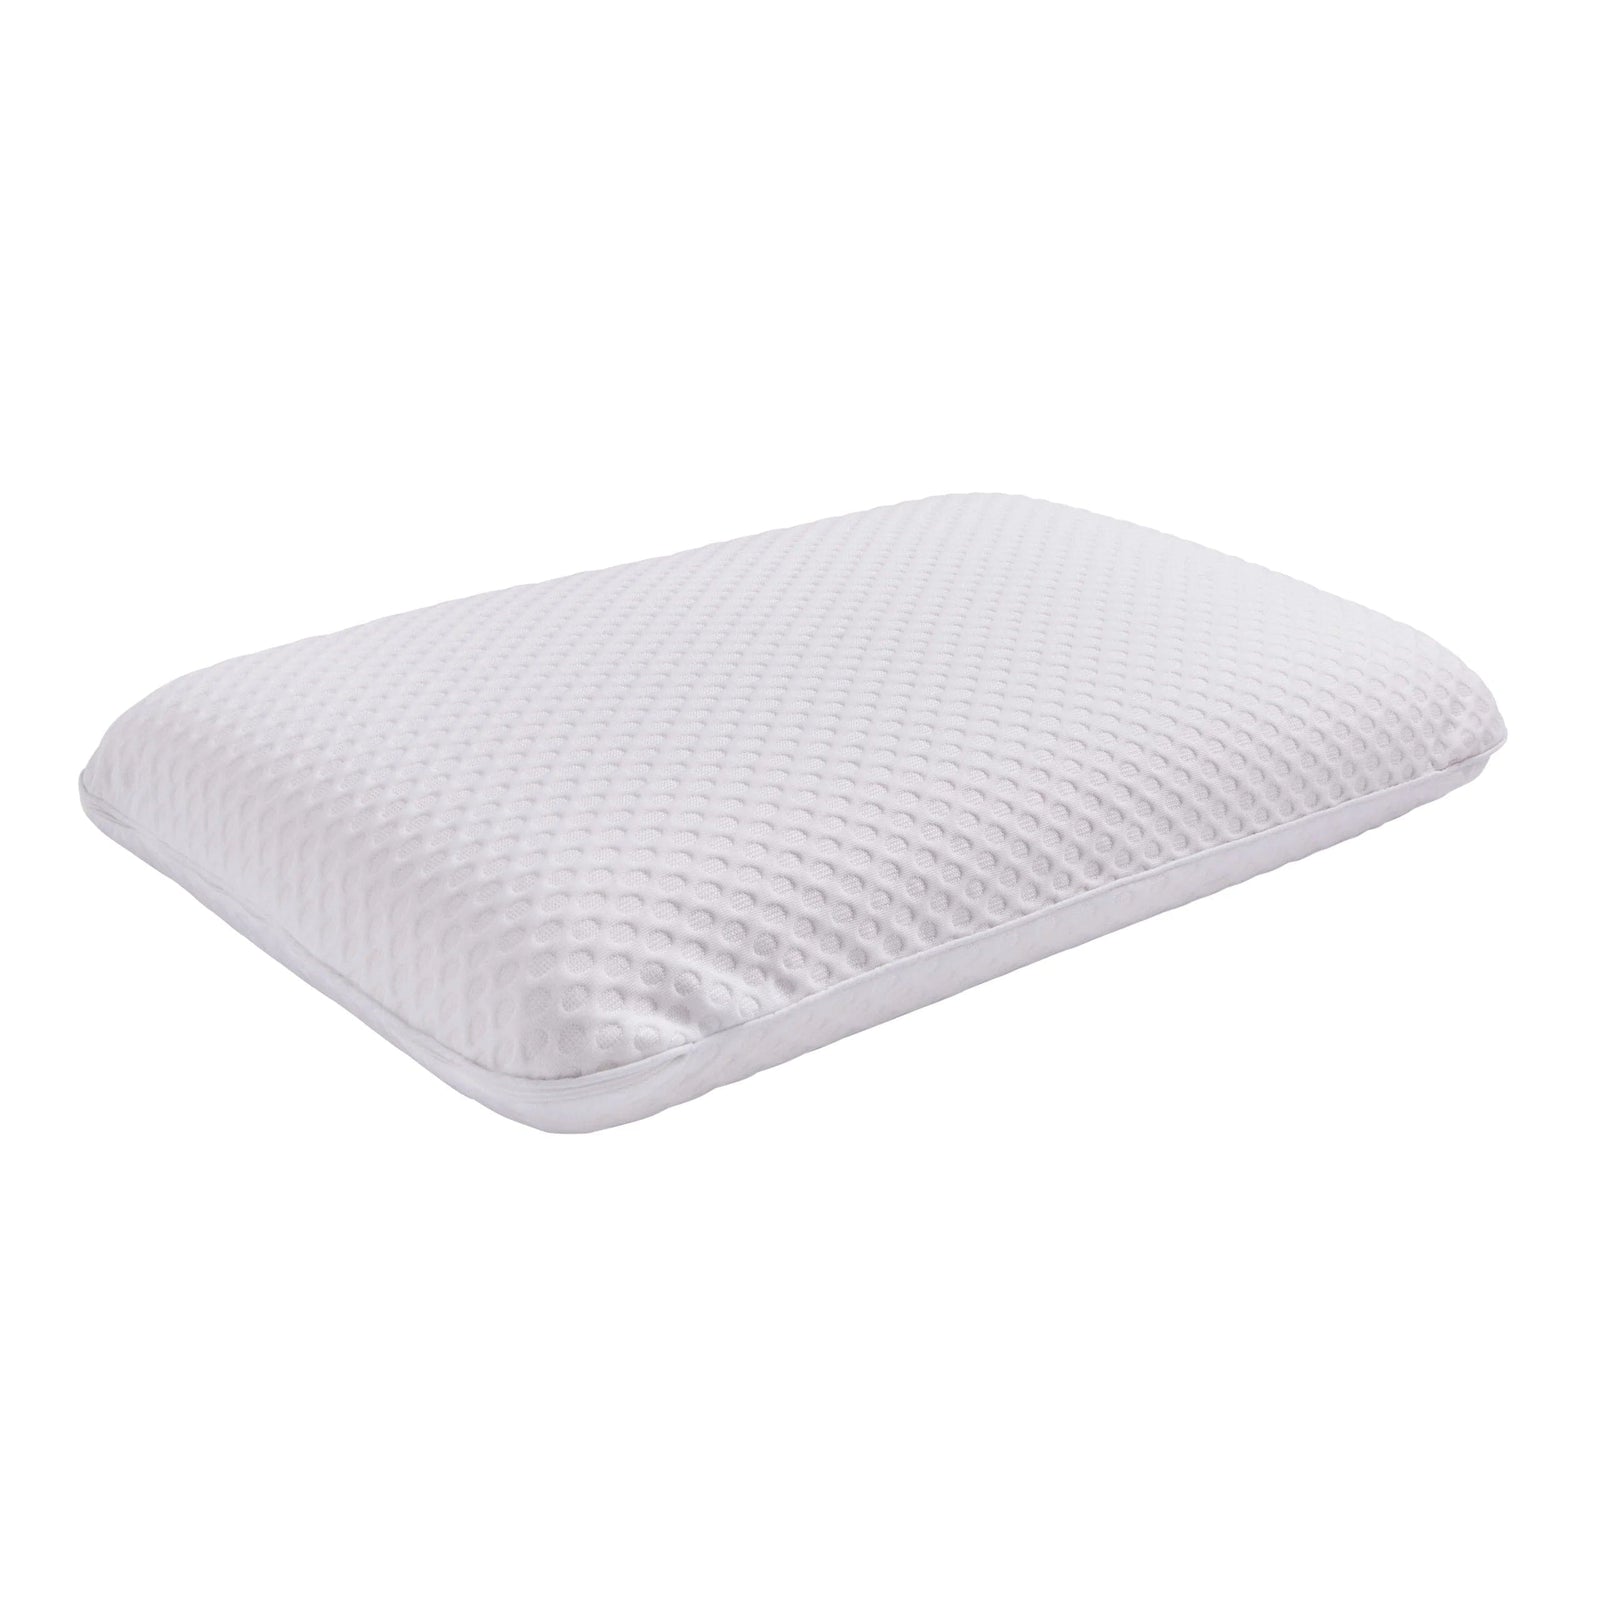 Dreamworld Cluster Memory Foam Support Pillow